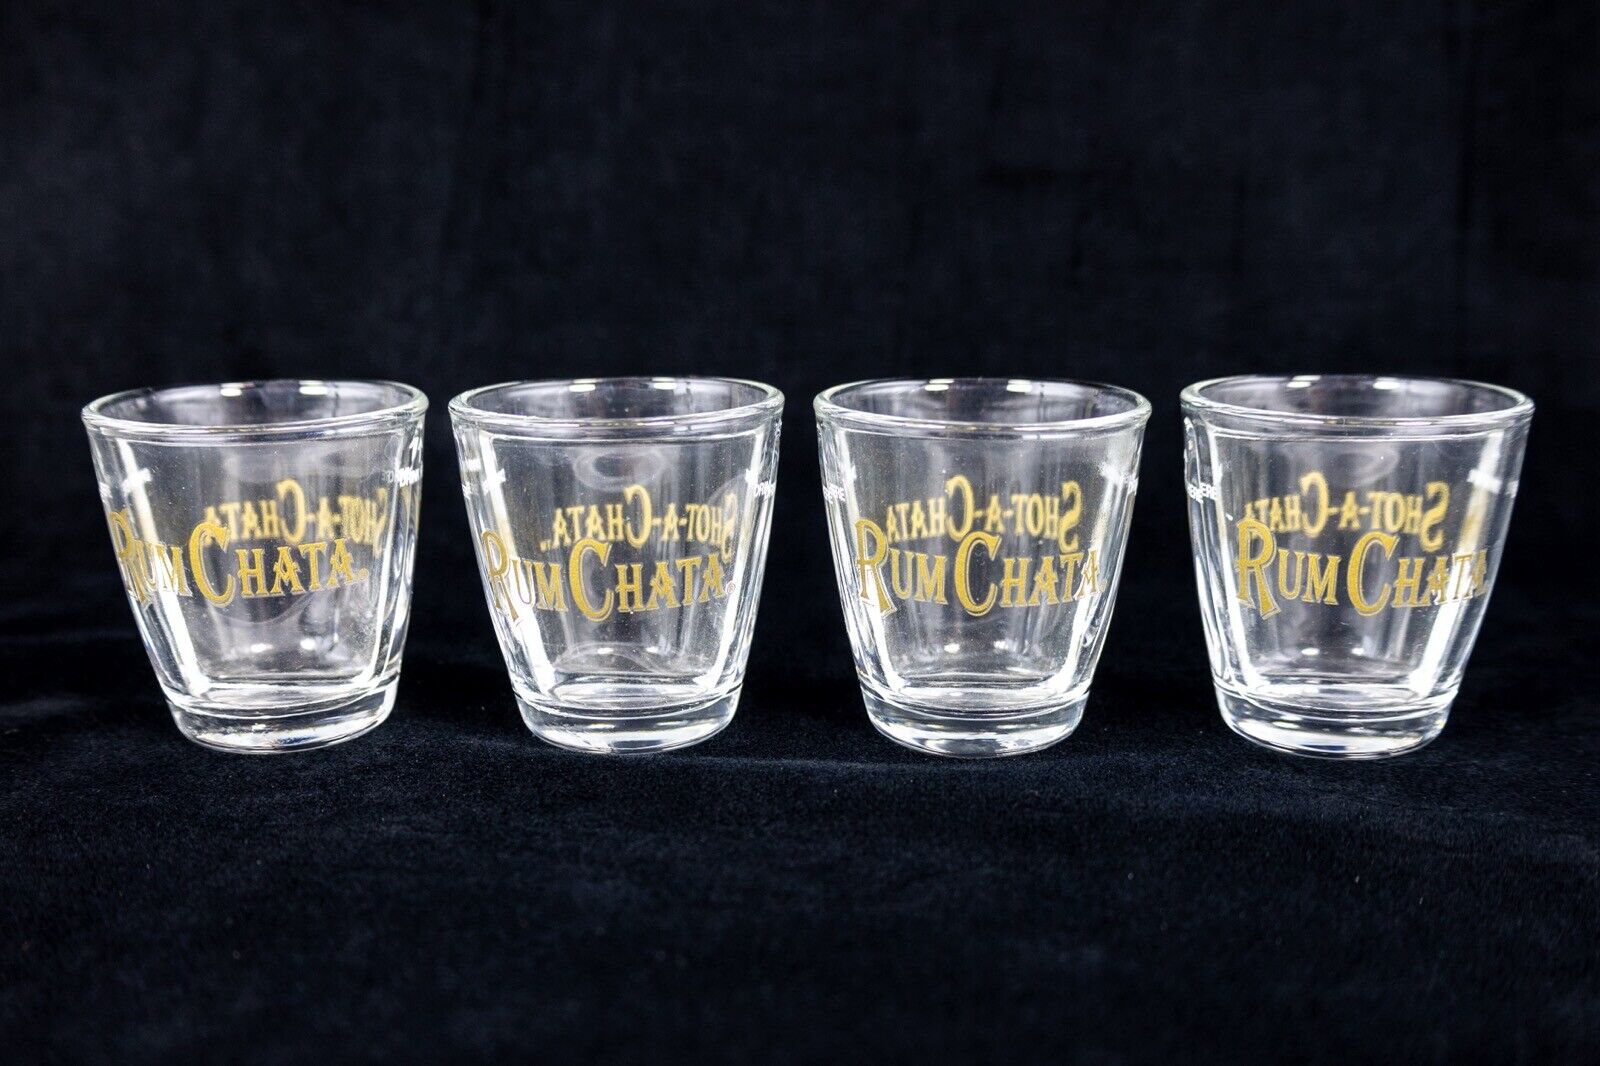 (4) New Rum Chata Shot-A-Chata Divided Shot Glasses Barware